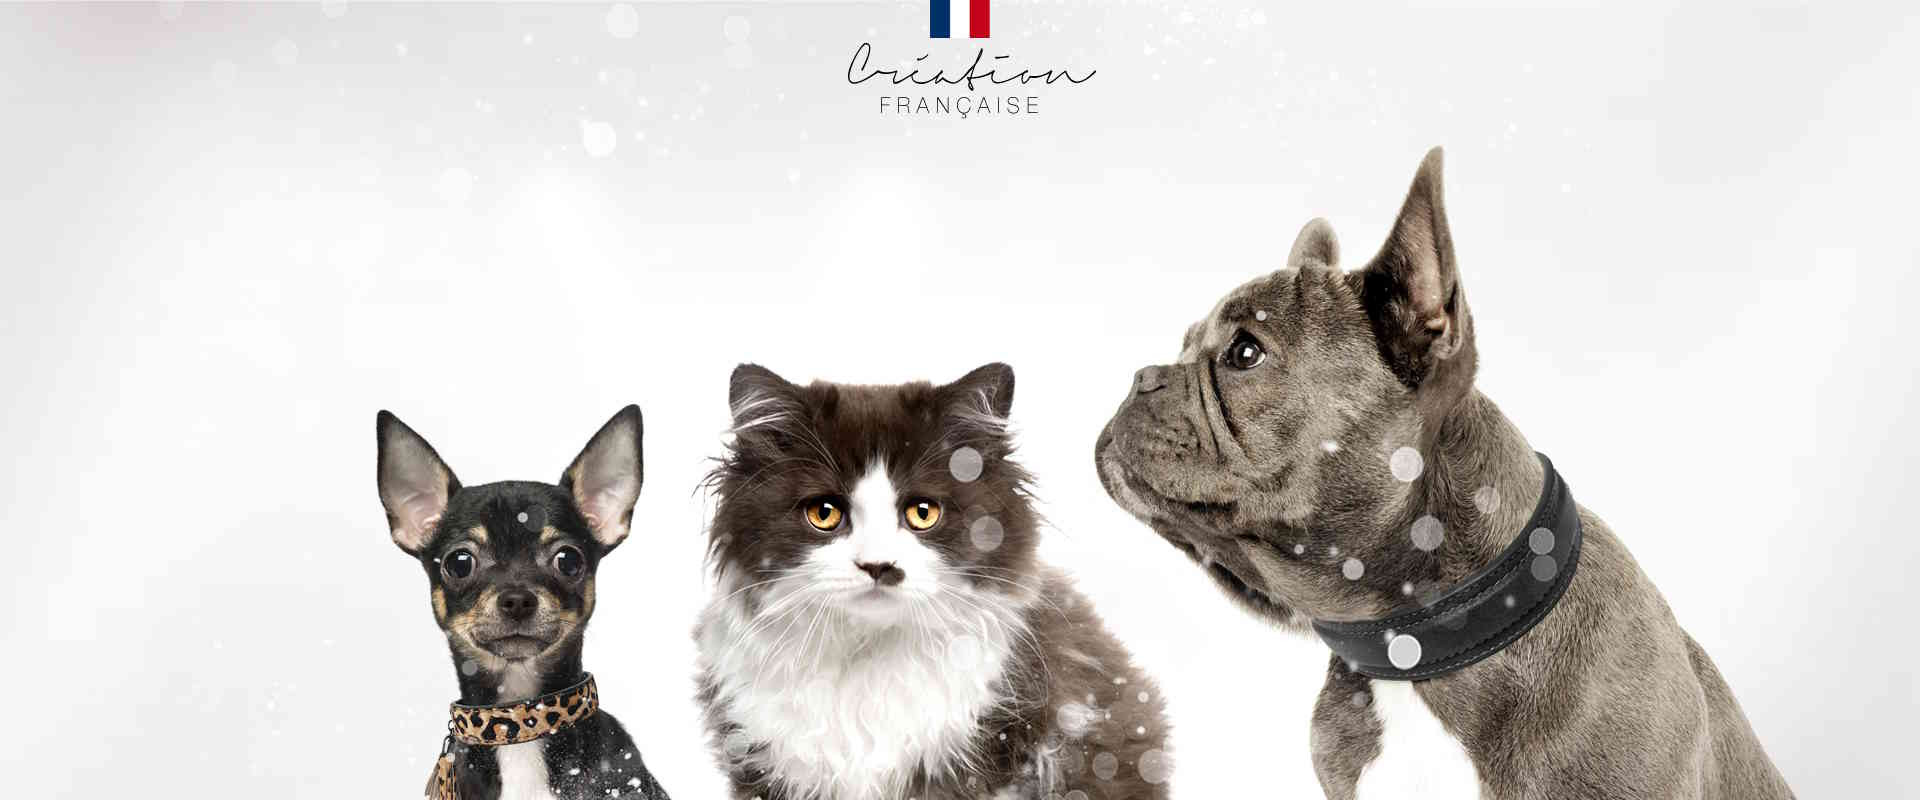 Harnais pour chat vichy – French Bandit